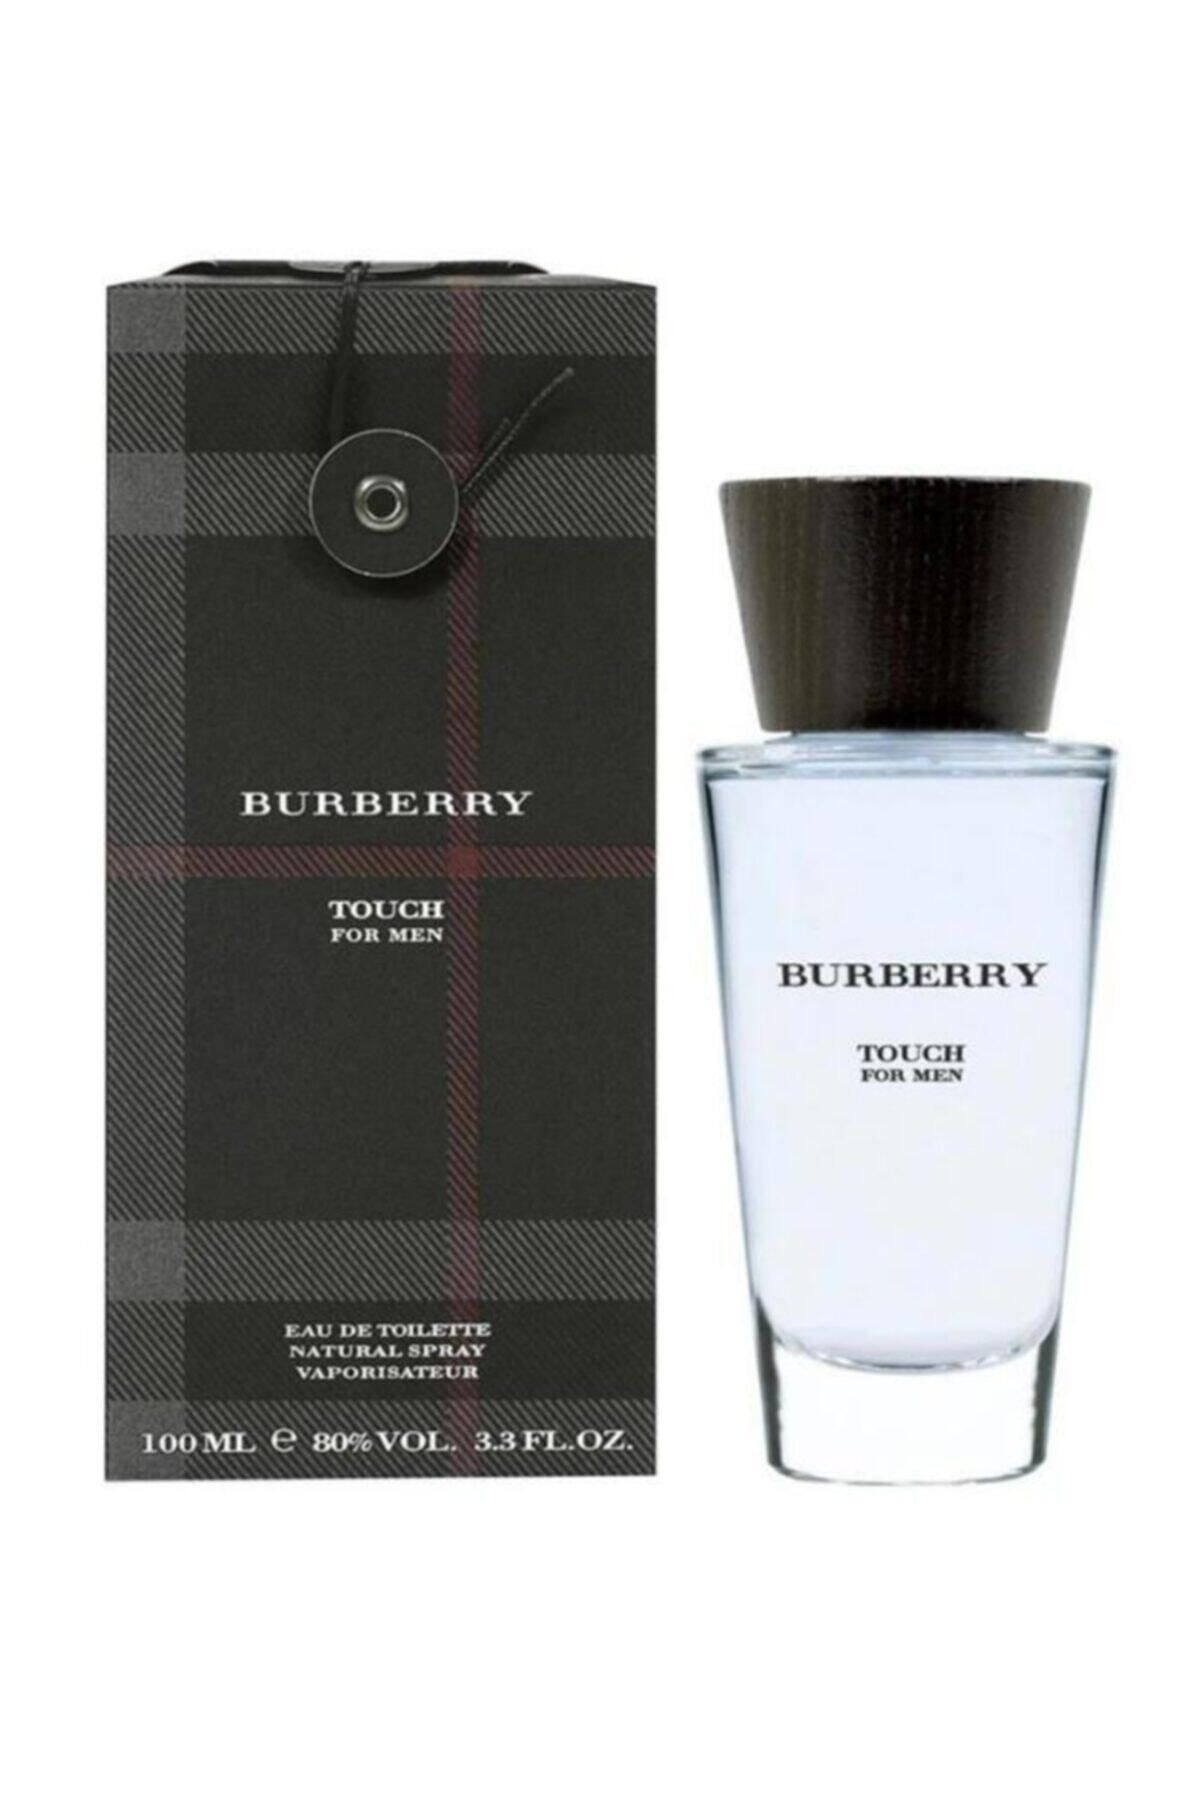 Burberry Erkek Parfüm Modelleri, Fiyatları - Trendyol